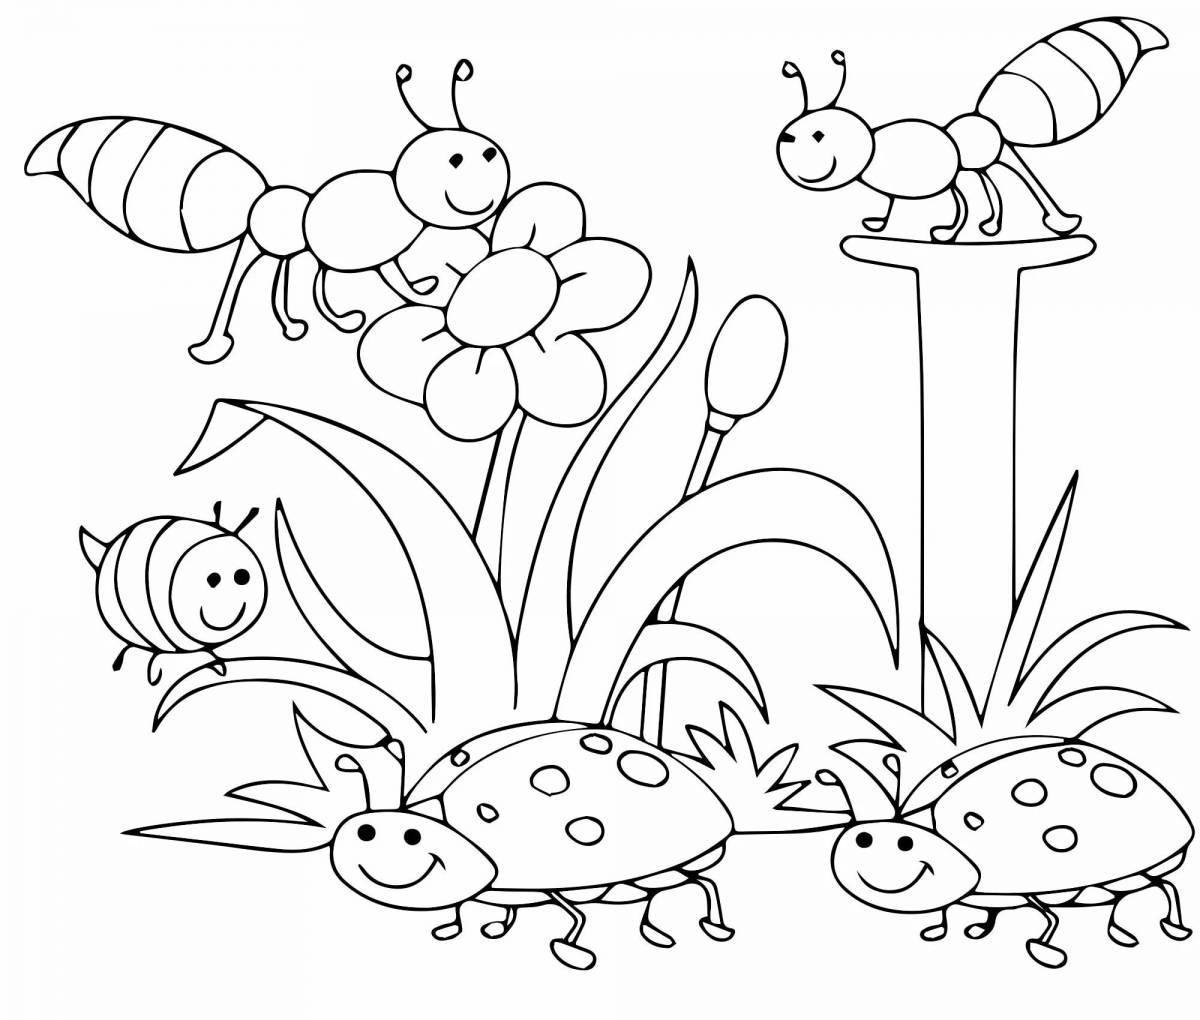 Красочная страница раскраски насекомых для детей 5-6 лет